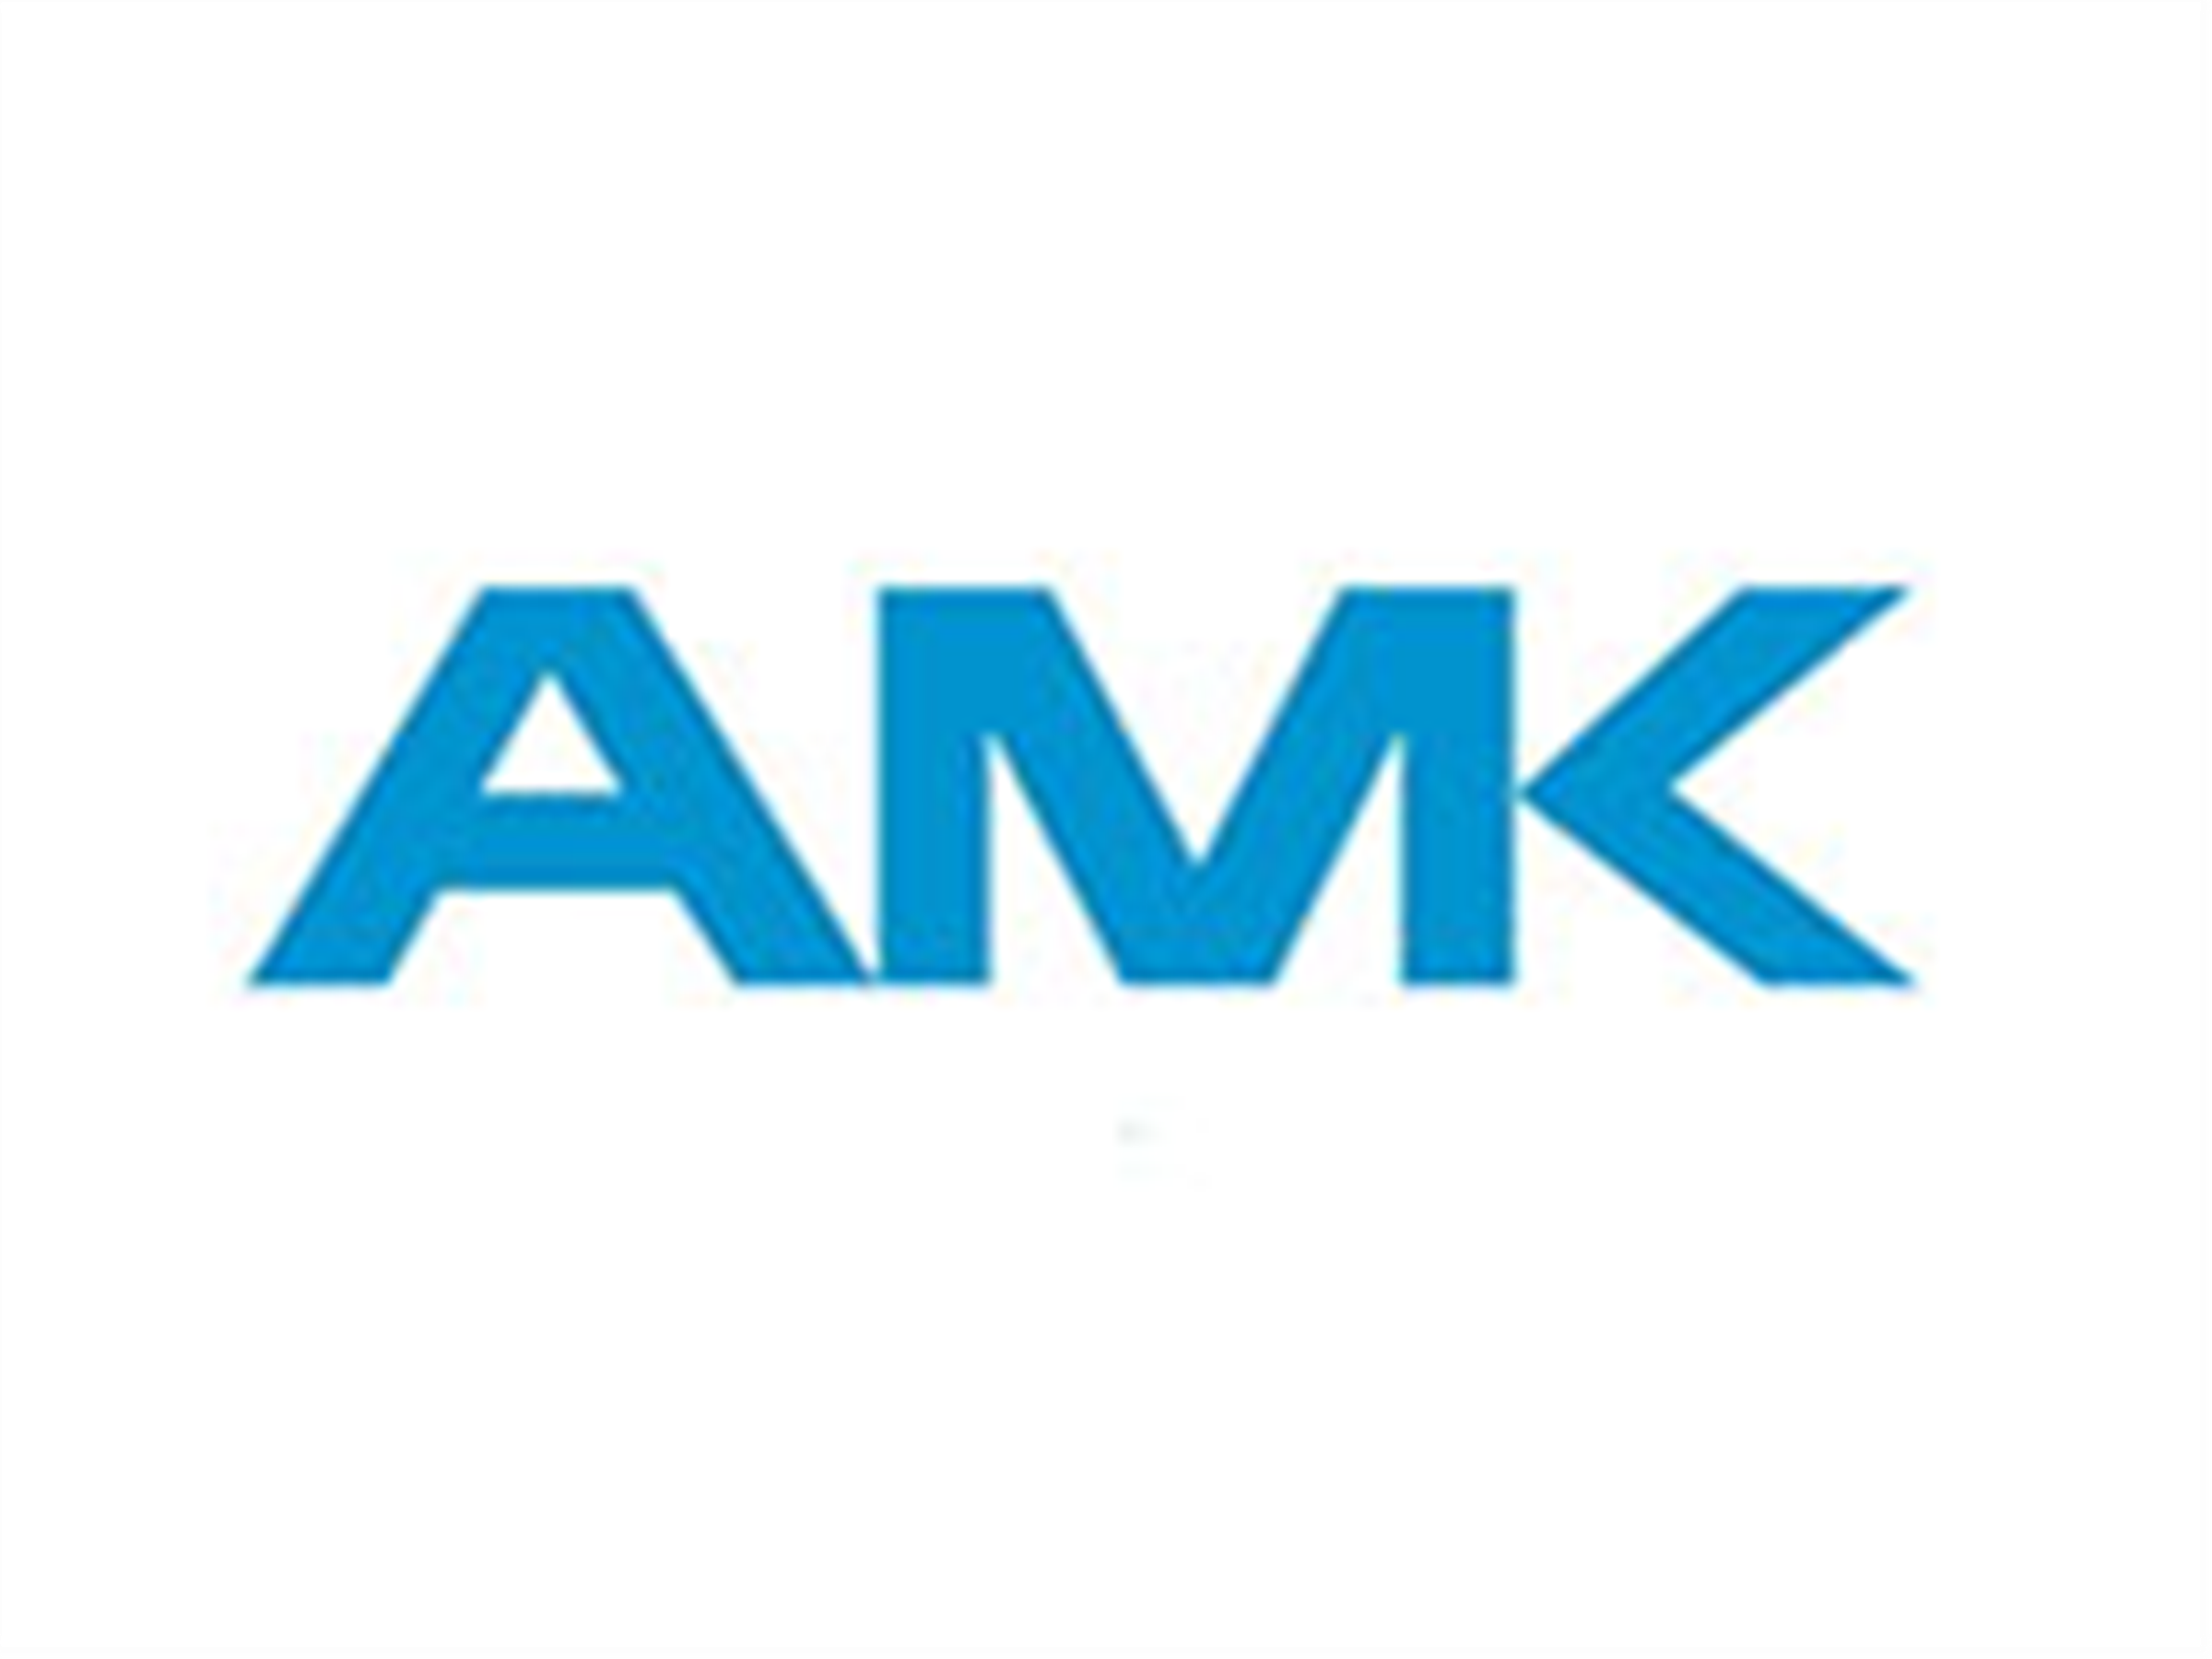 德國AMK電機